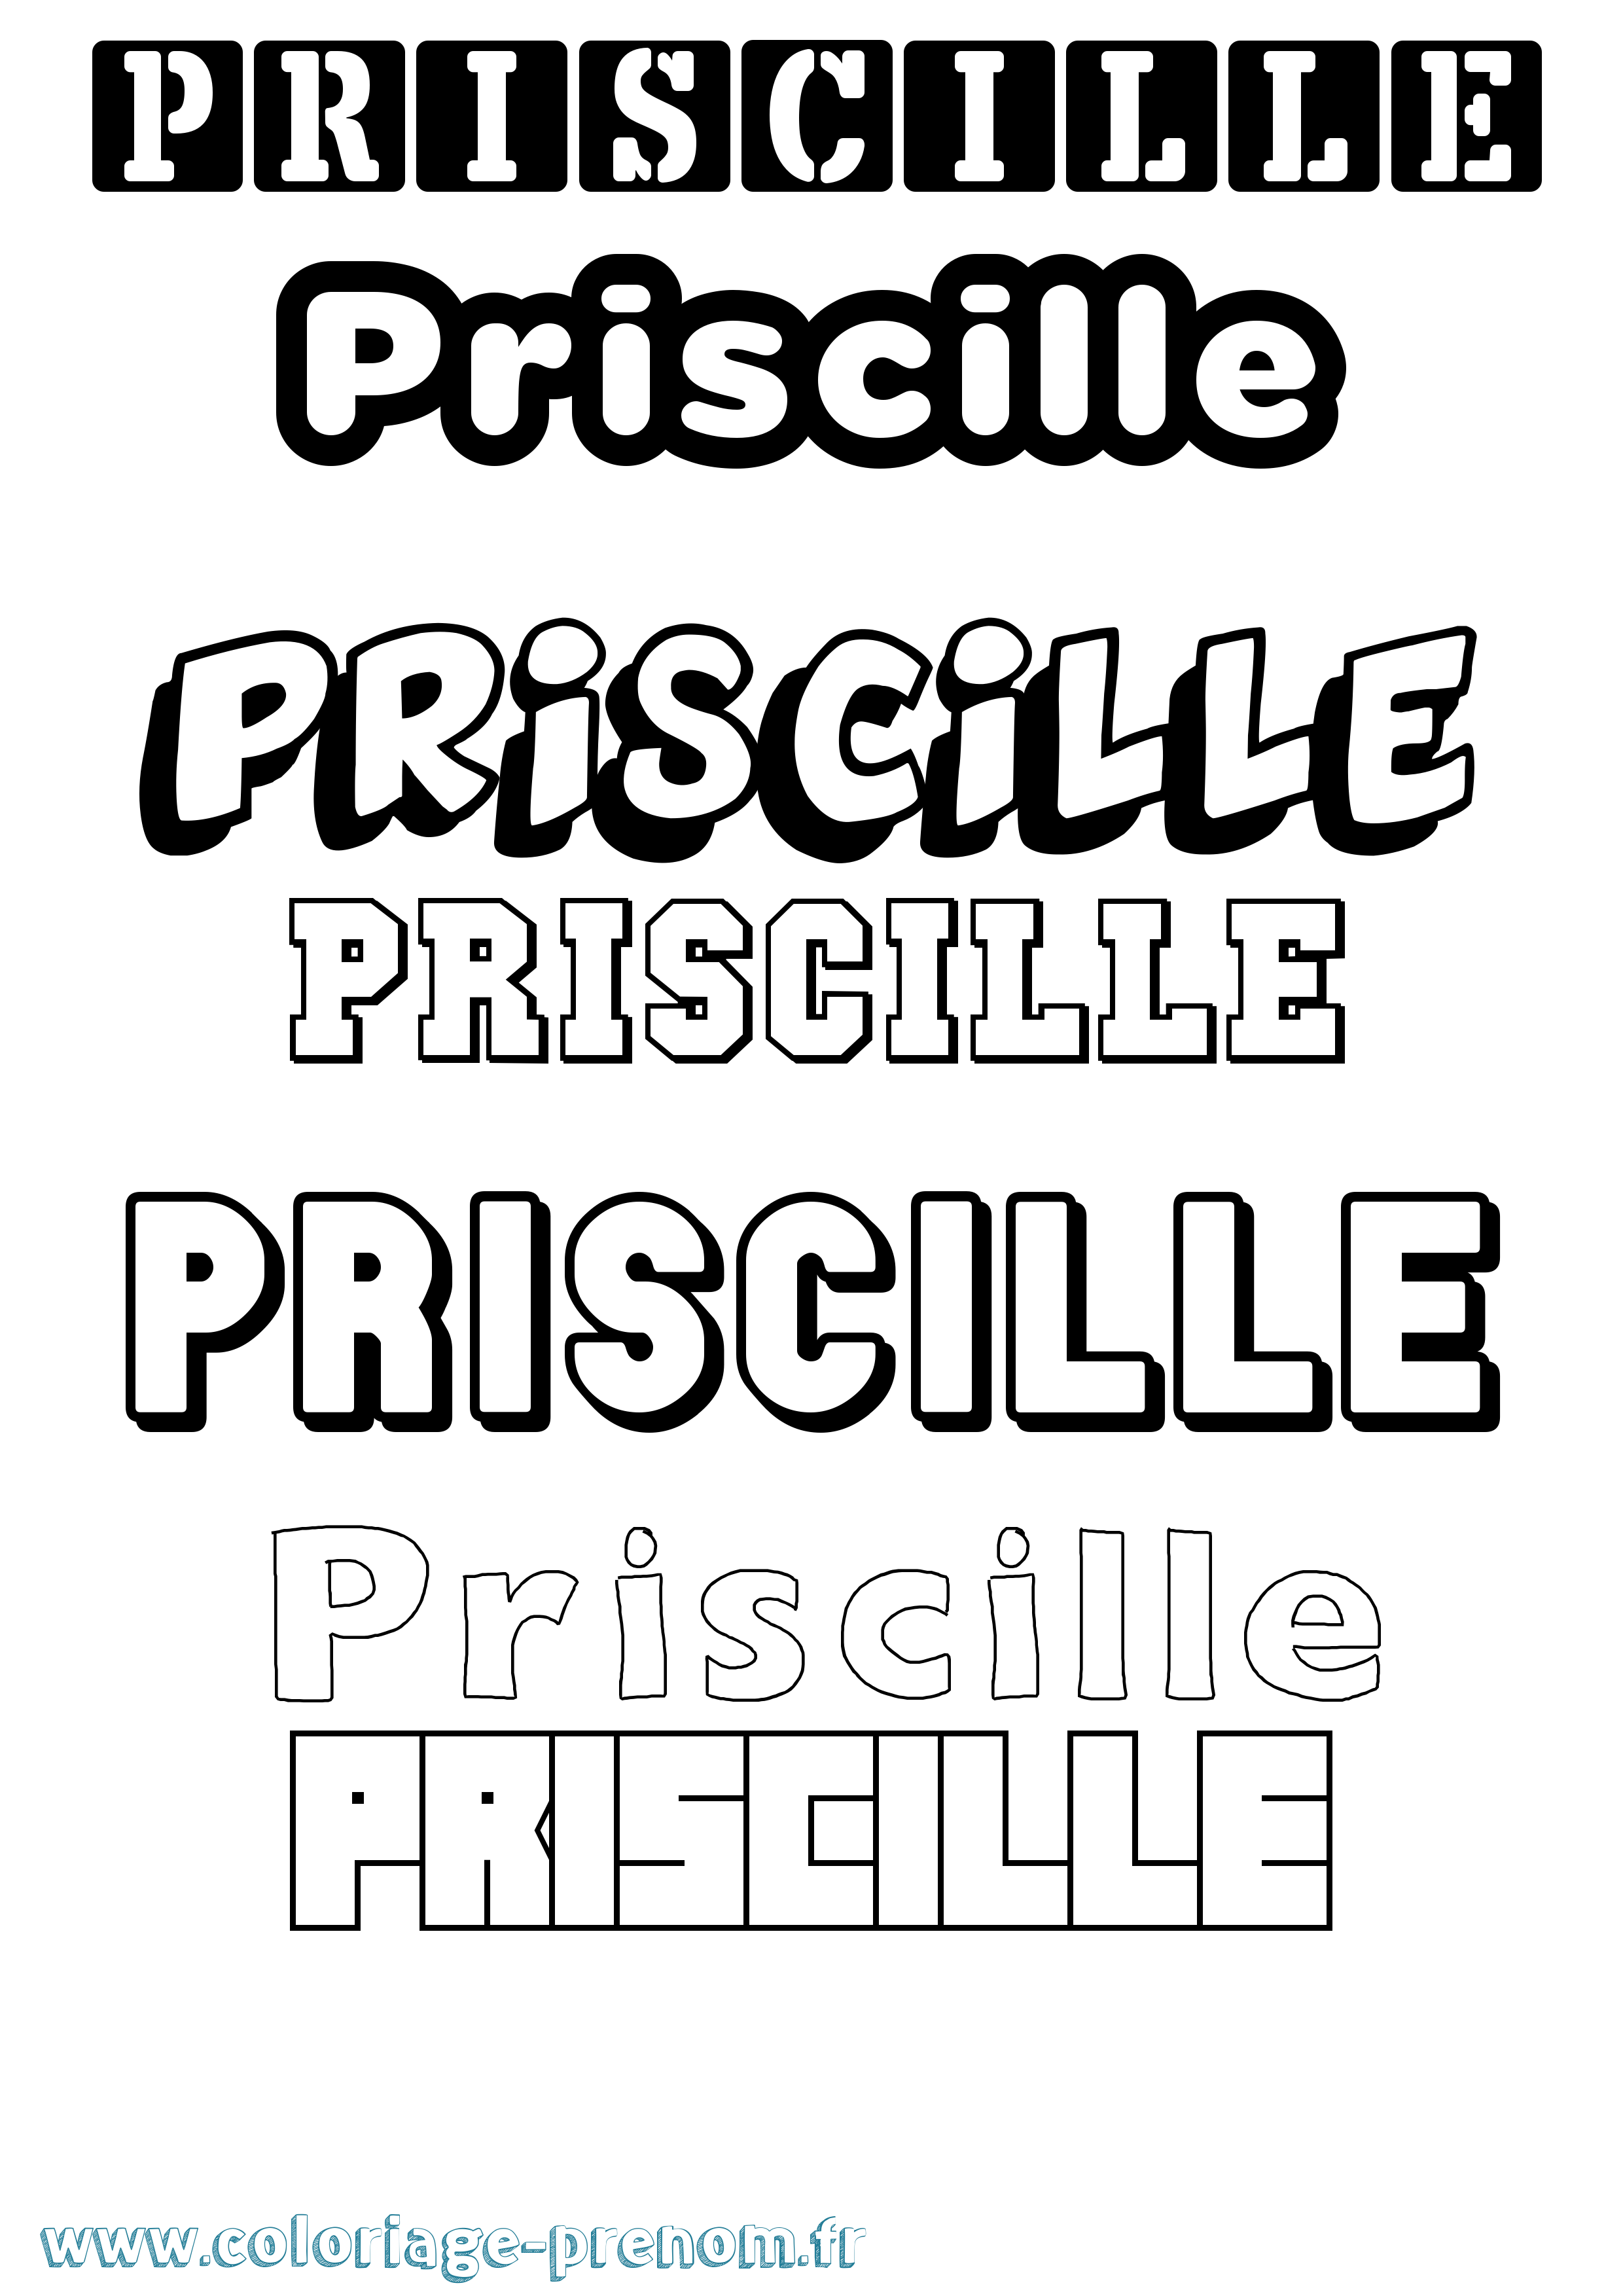 Coloriage prénom Priscille